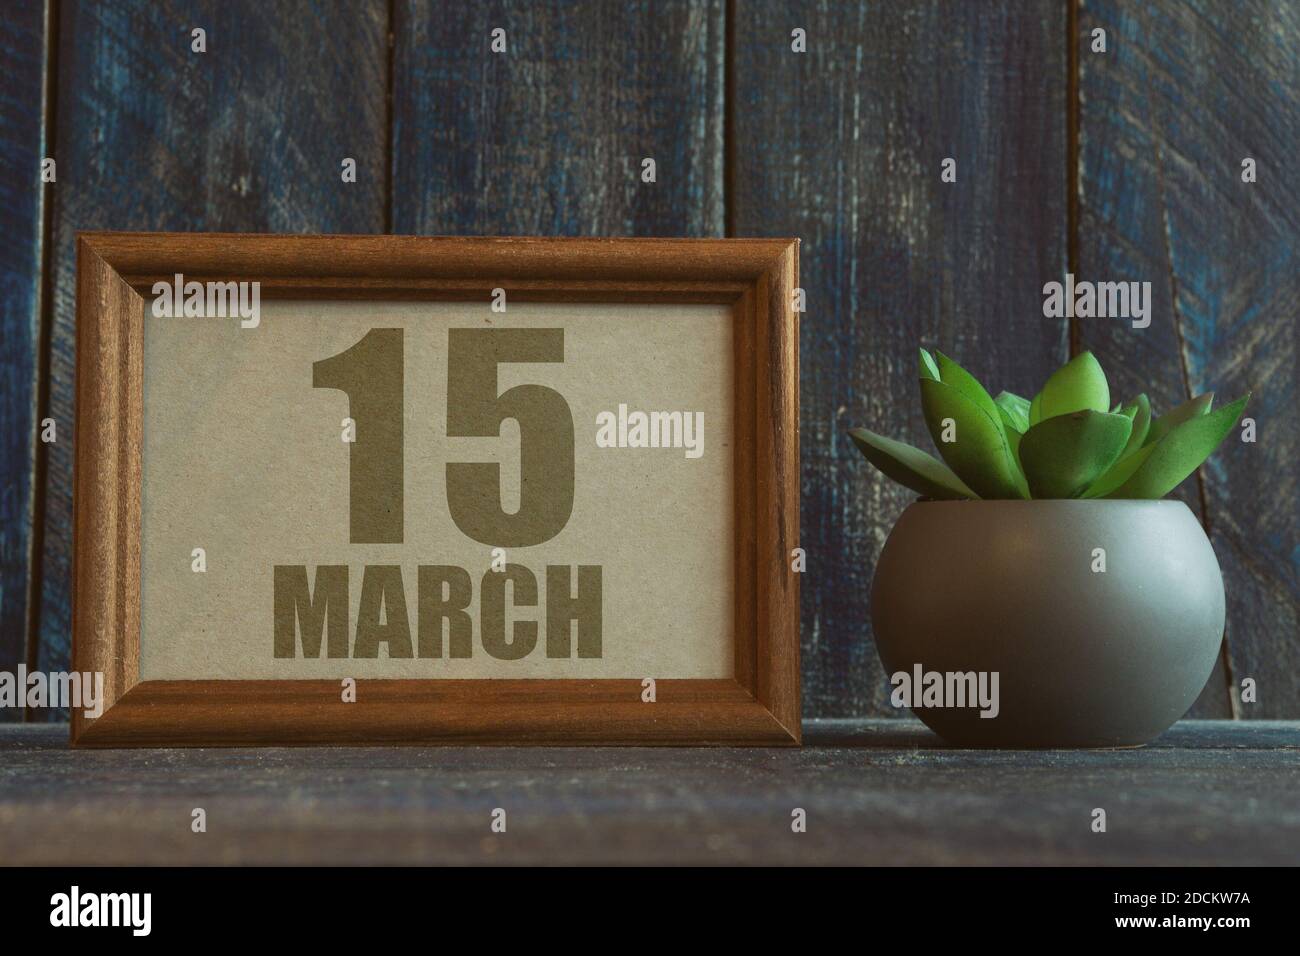 märz 15th. Tag 15 des Monats, Datum im Rahmen neben Sukkulente auf hölzernen Hintergrund Frühlingsmonat, Tag des Jahres Konzept Stockfoto